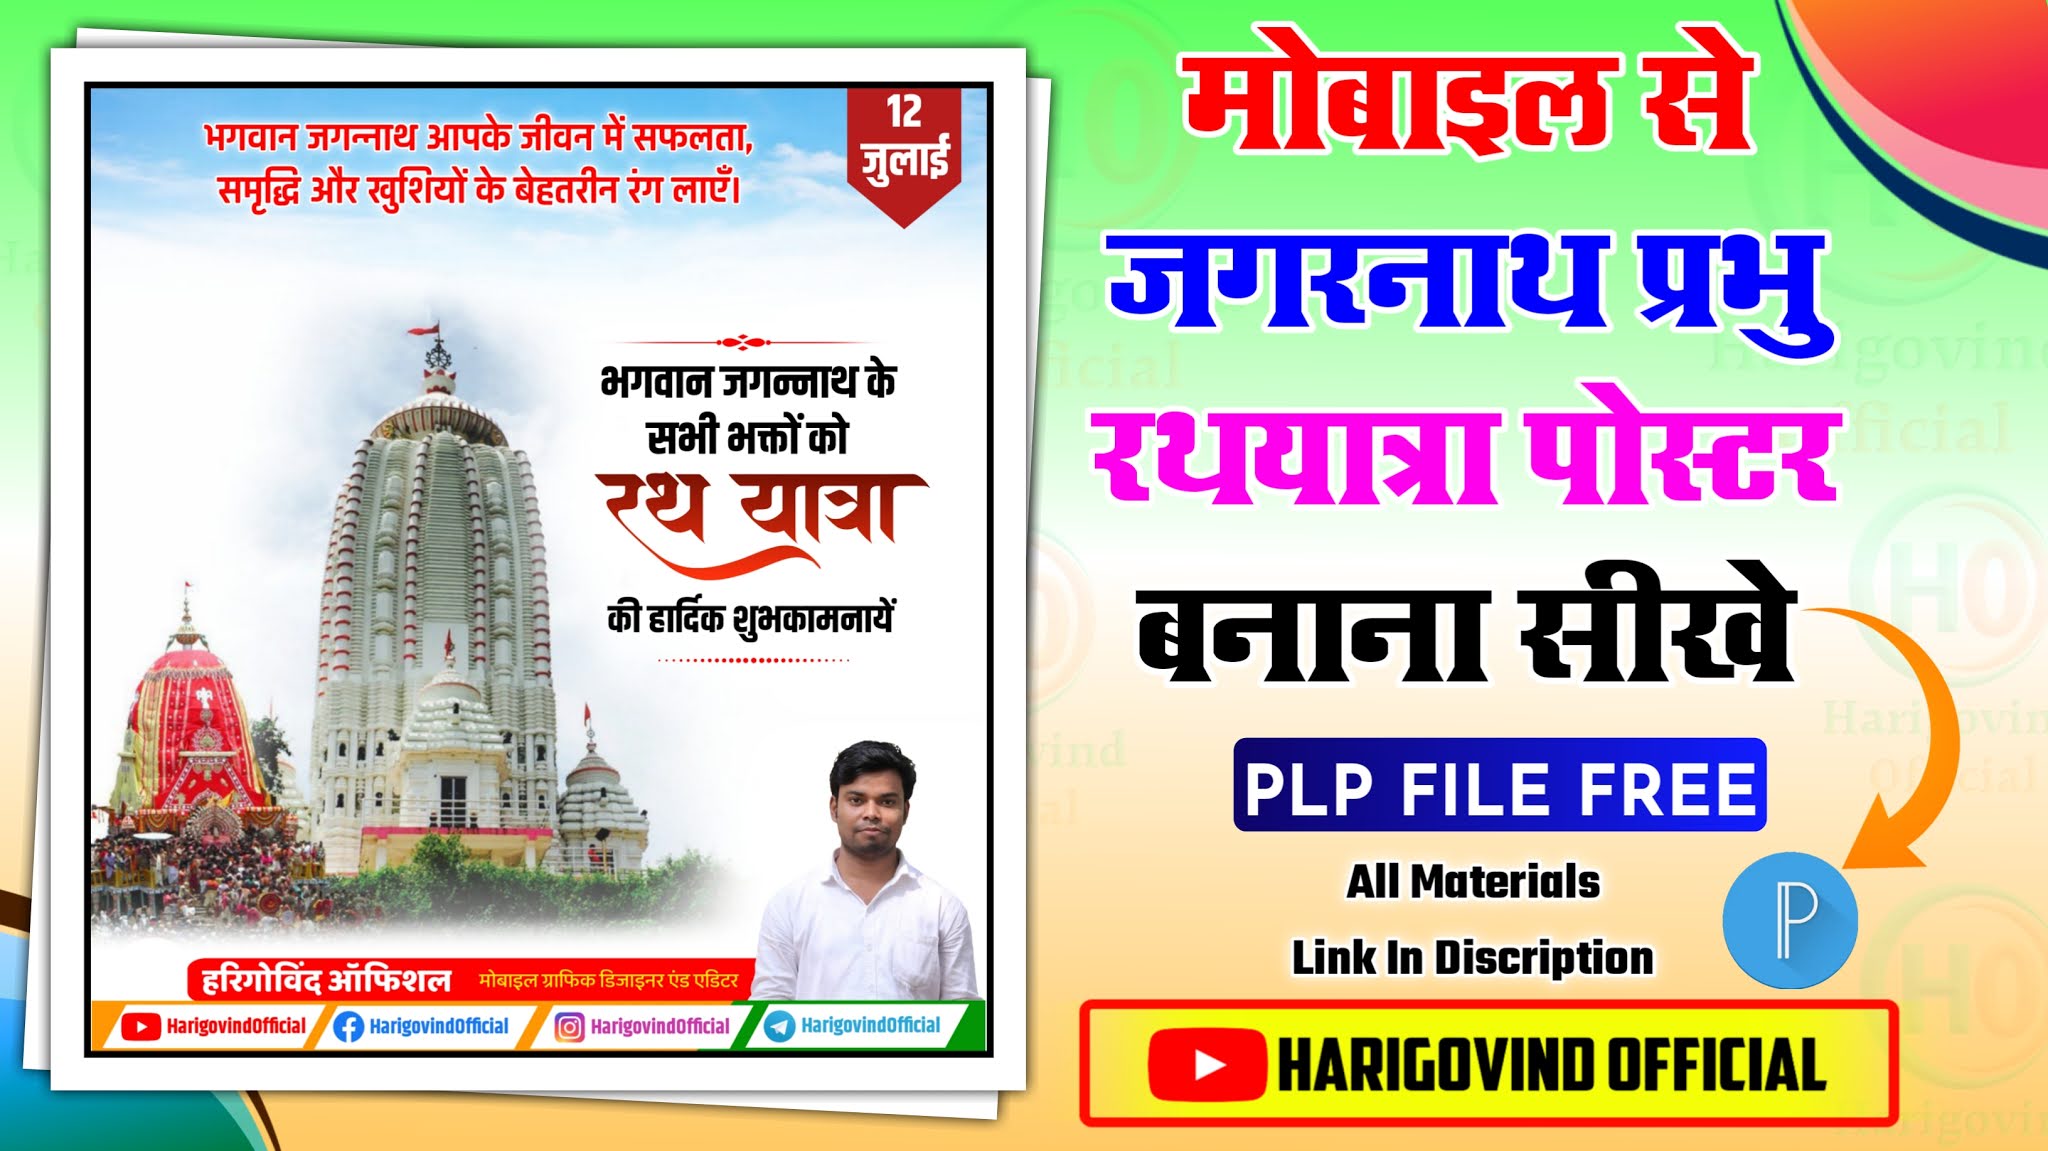 Rath Yatra Poster kaise banaye | Jagannath Rath Yatra Banner Editing |  Mobile Se Poster kaise banaye 2021